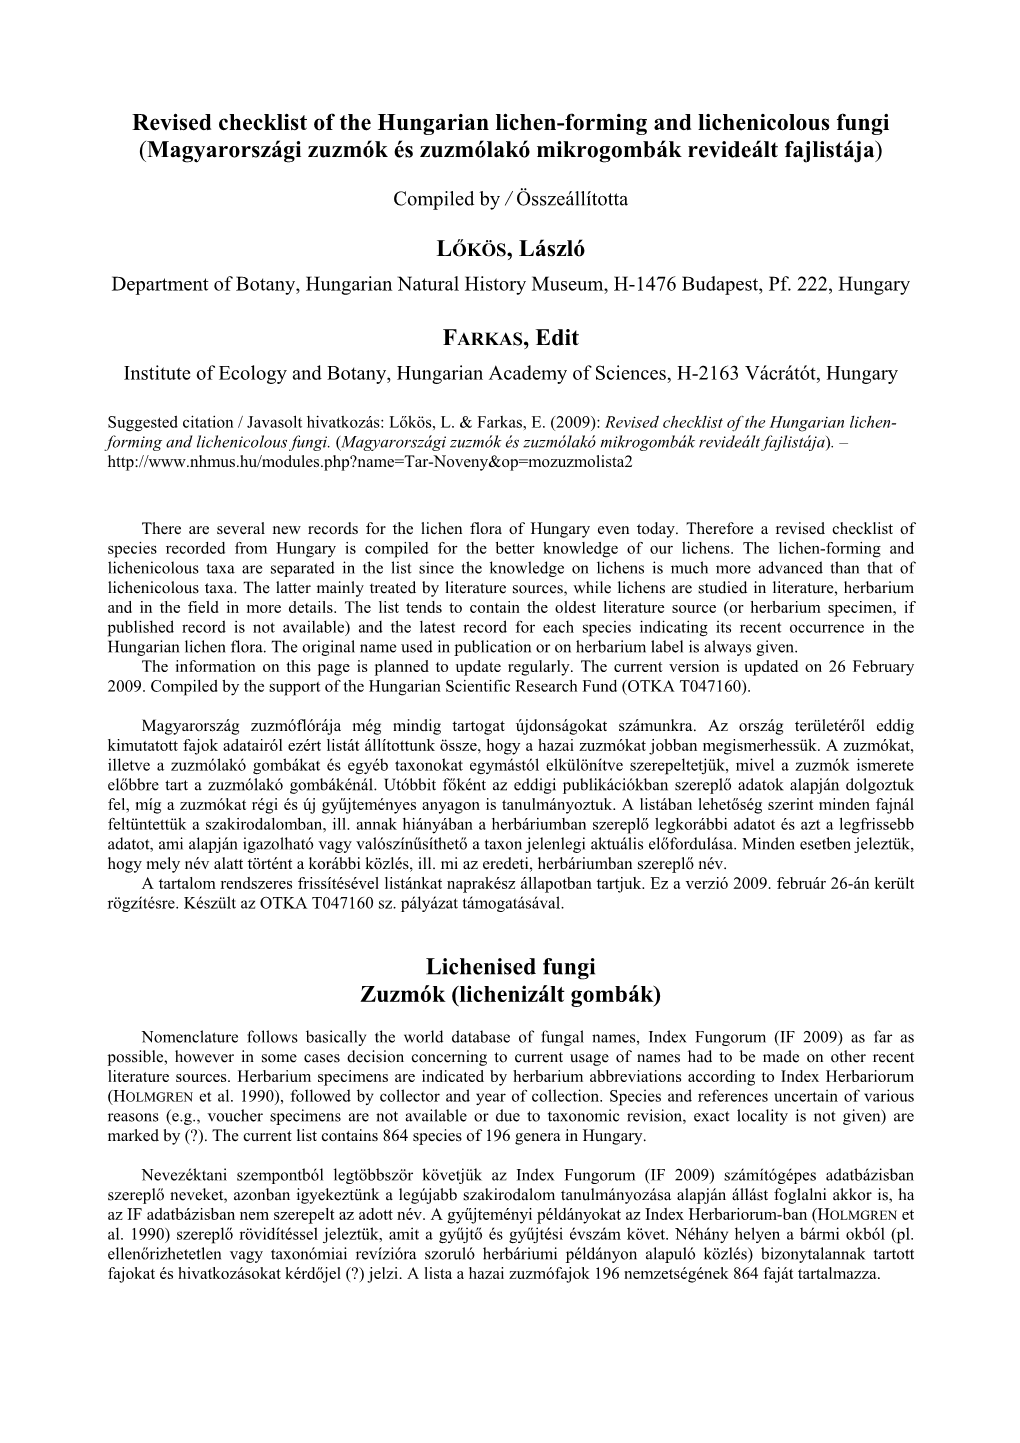 Revised Checklist of the Hungarian Lichen-Forming and Lichenicolous Fungi (Magyarországi Zuzmók És Zuzmólakó Mikrogombák Revideált Fajlistája)